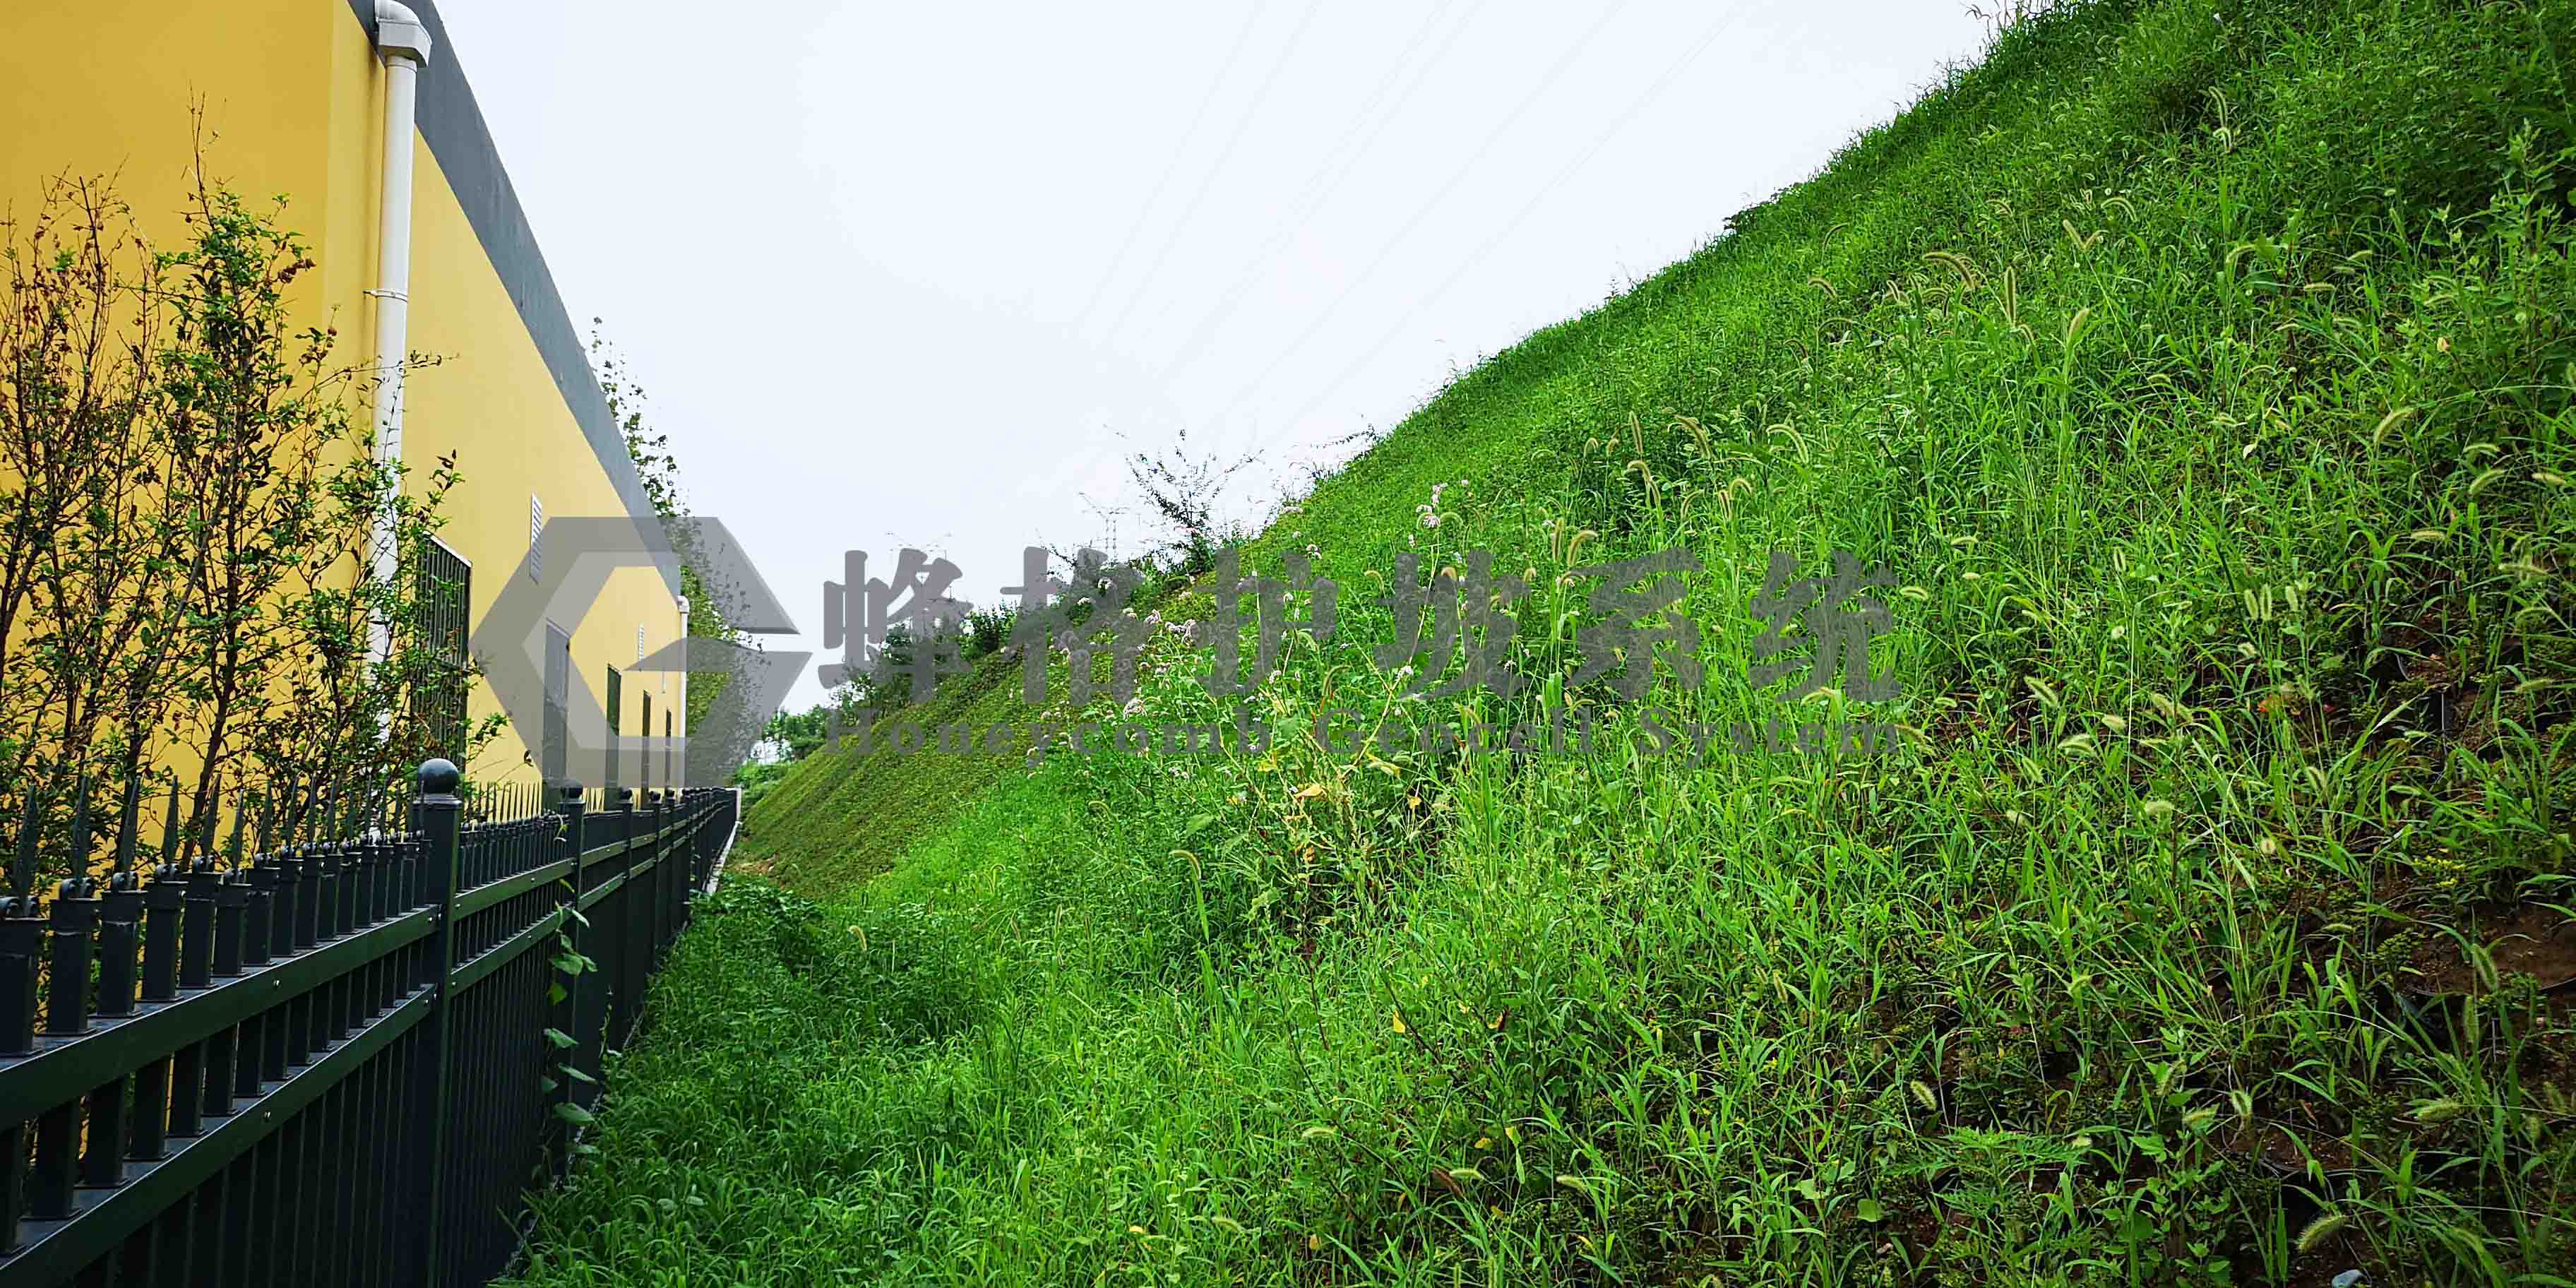 应用蜂格护坡系统治理,呈现出无工程痕迹的绿色景观